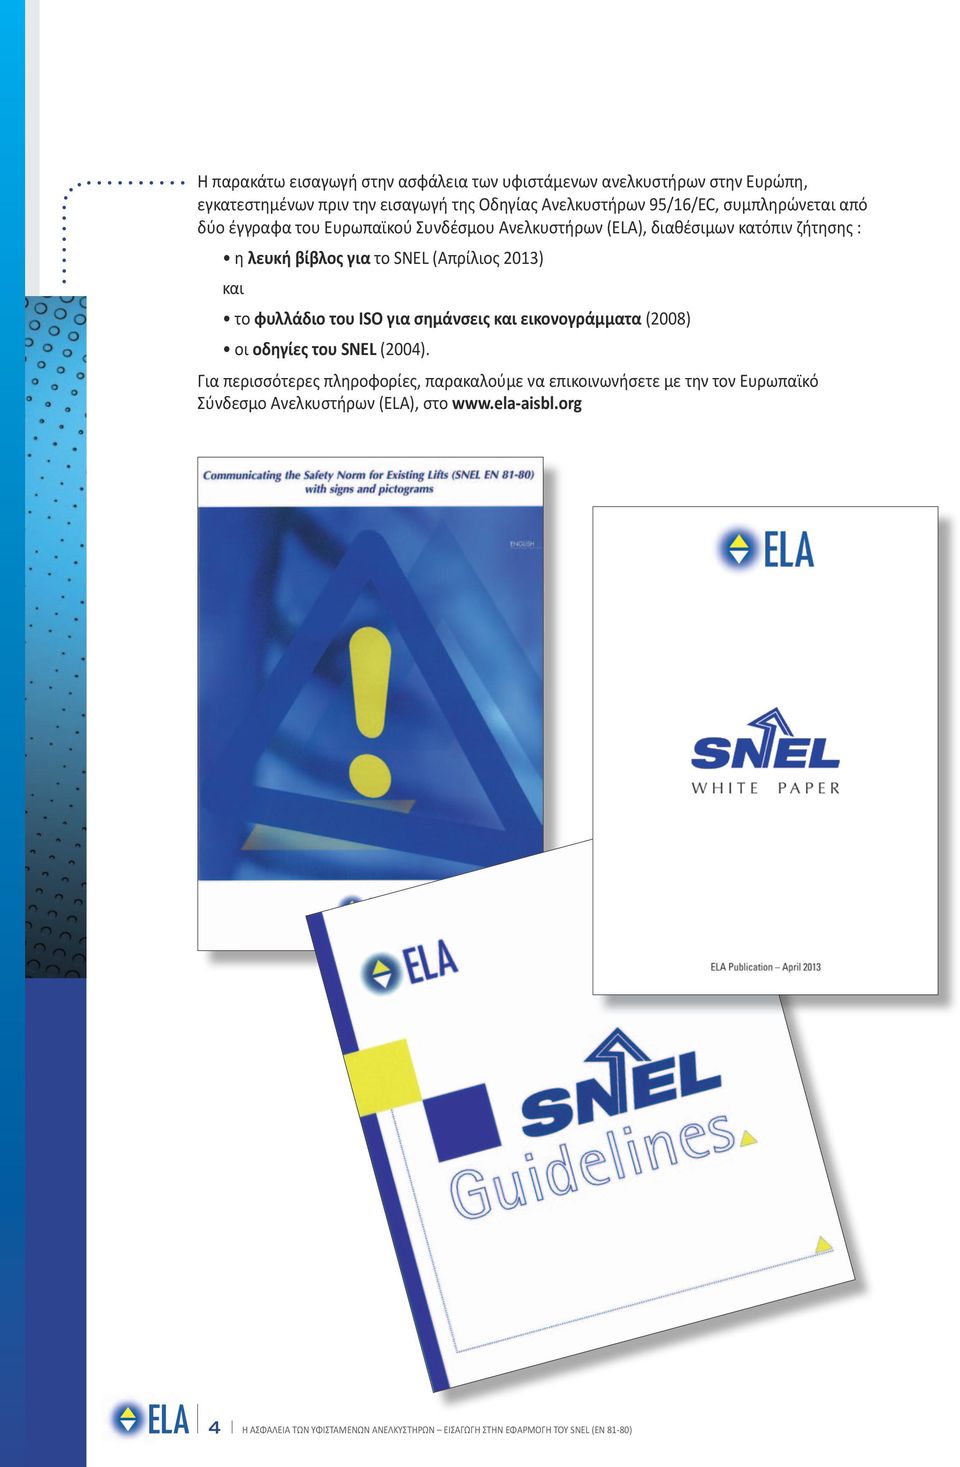 λευκή βίβλος για το SNEL (Απρίλιος 2013) και το φυλλάδιο του ISO για σημάνσεις και εικονογράμματα (2008) οι οδηγίες του SNEL